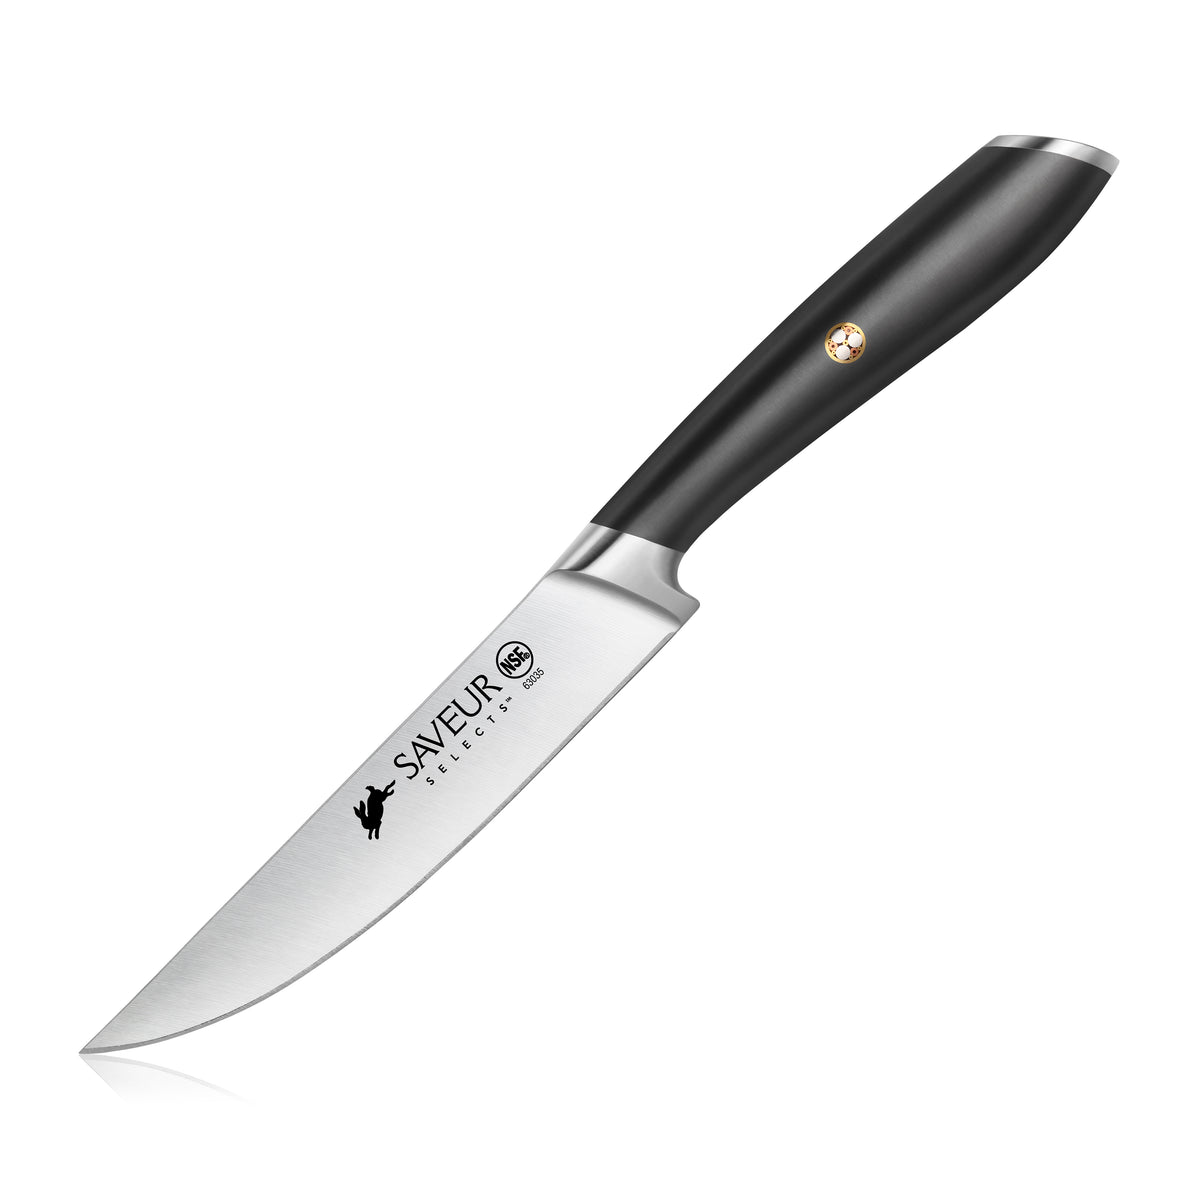 FOXEL Sandalwood Serrated Steak Knife 4 Set, German Stainless Steel